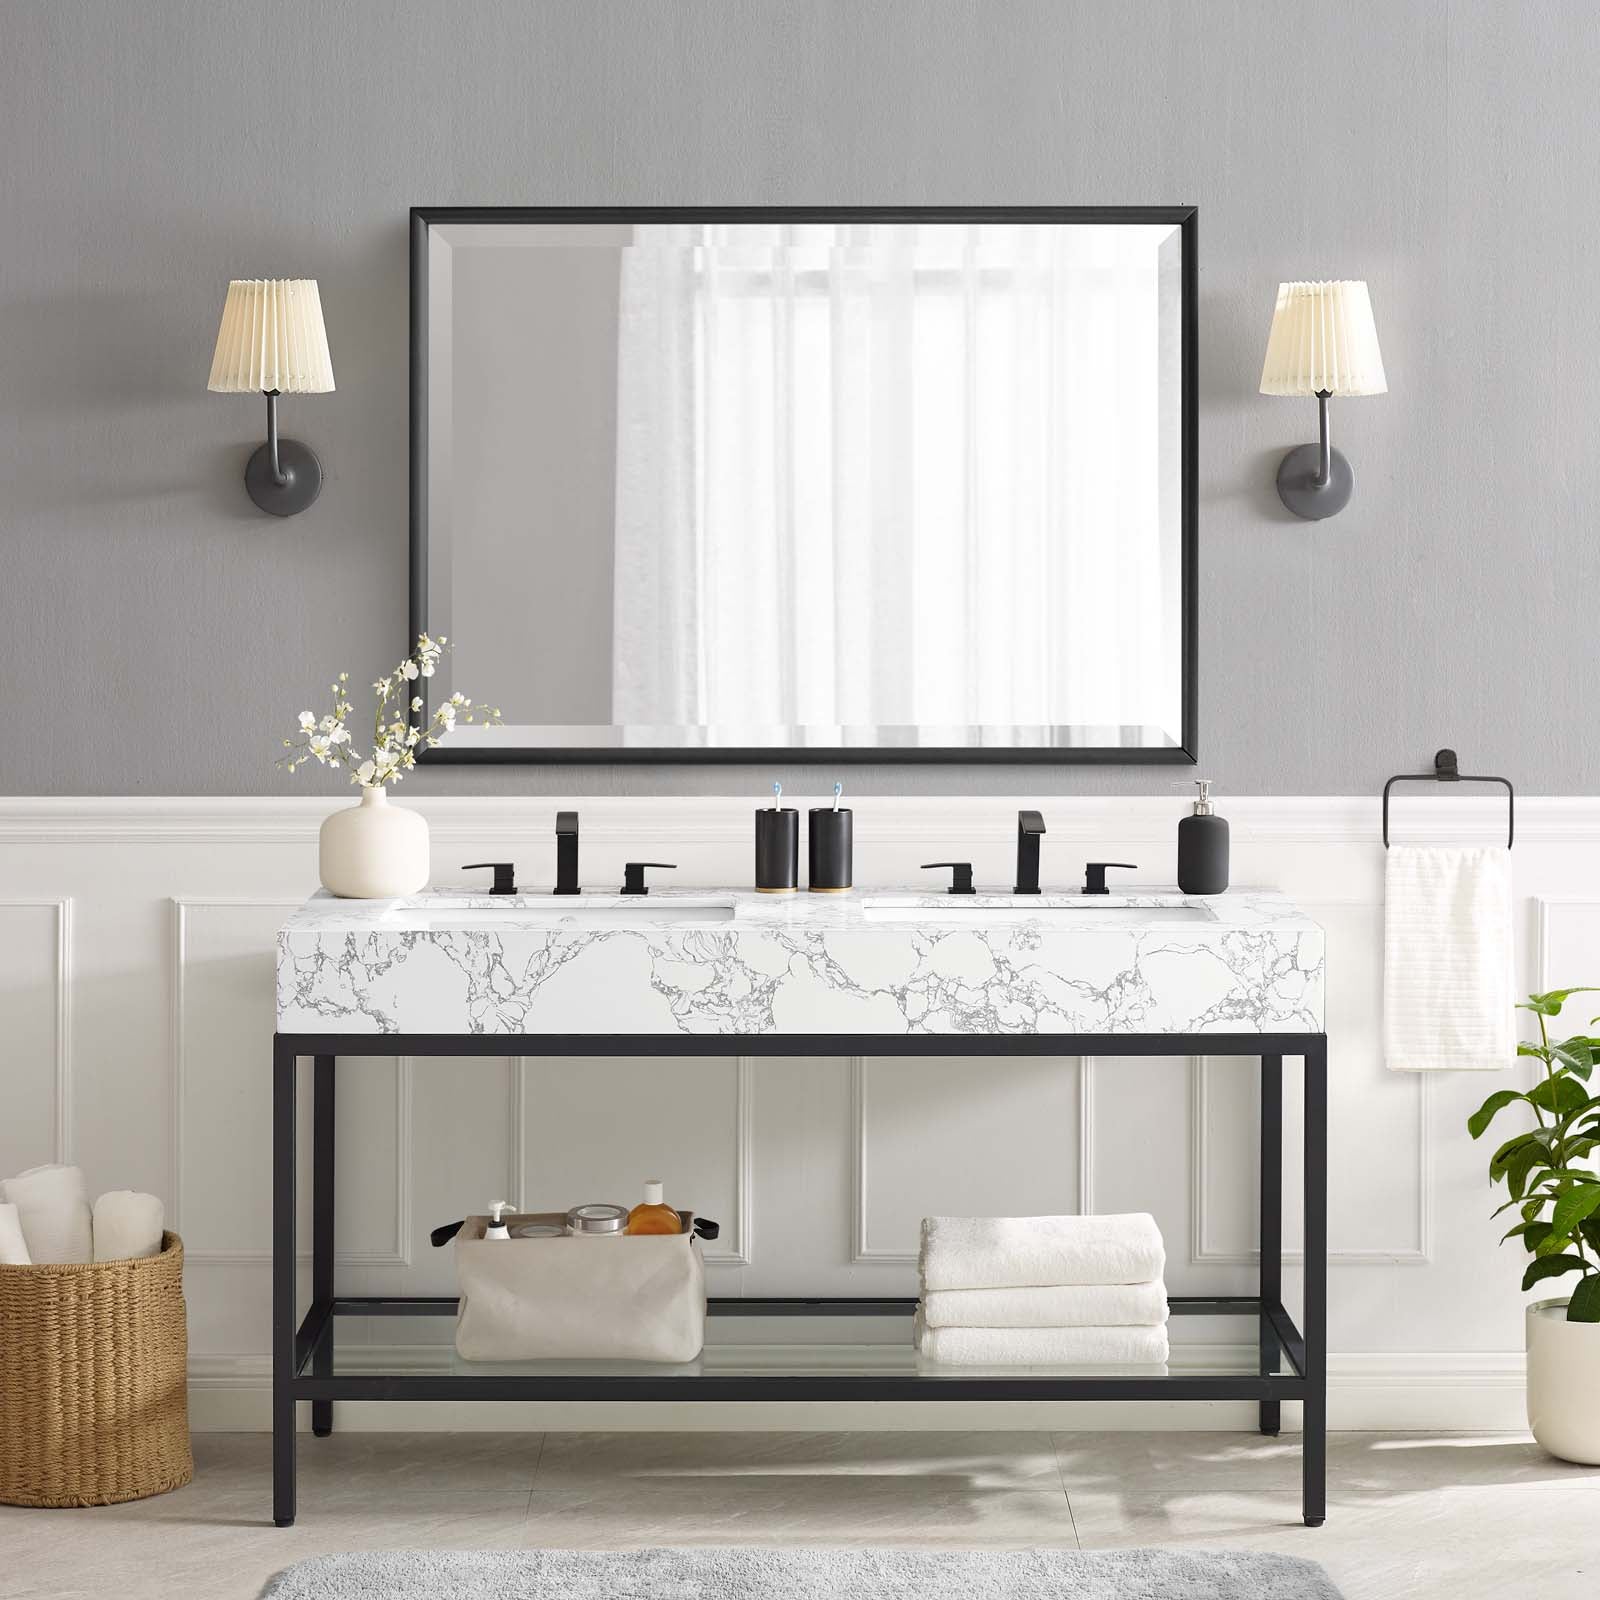 Modway Bathroom Vanity - Kingsley 60" Black Stainless Steel Bathroom Vanity Black White